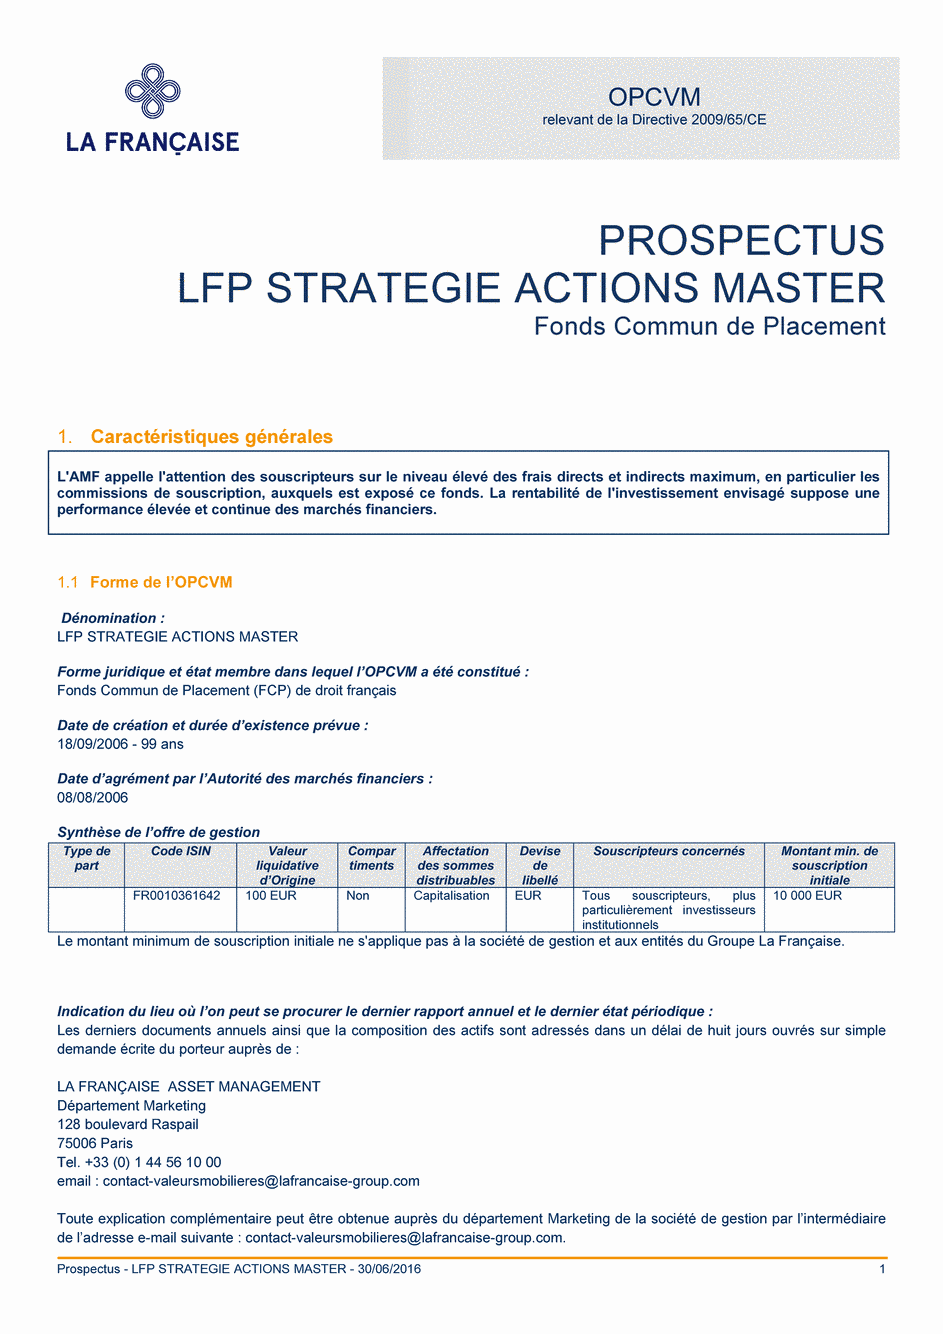 Prospectus LFP Strategie Actions Master - 30/06/2016 - Français